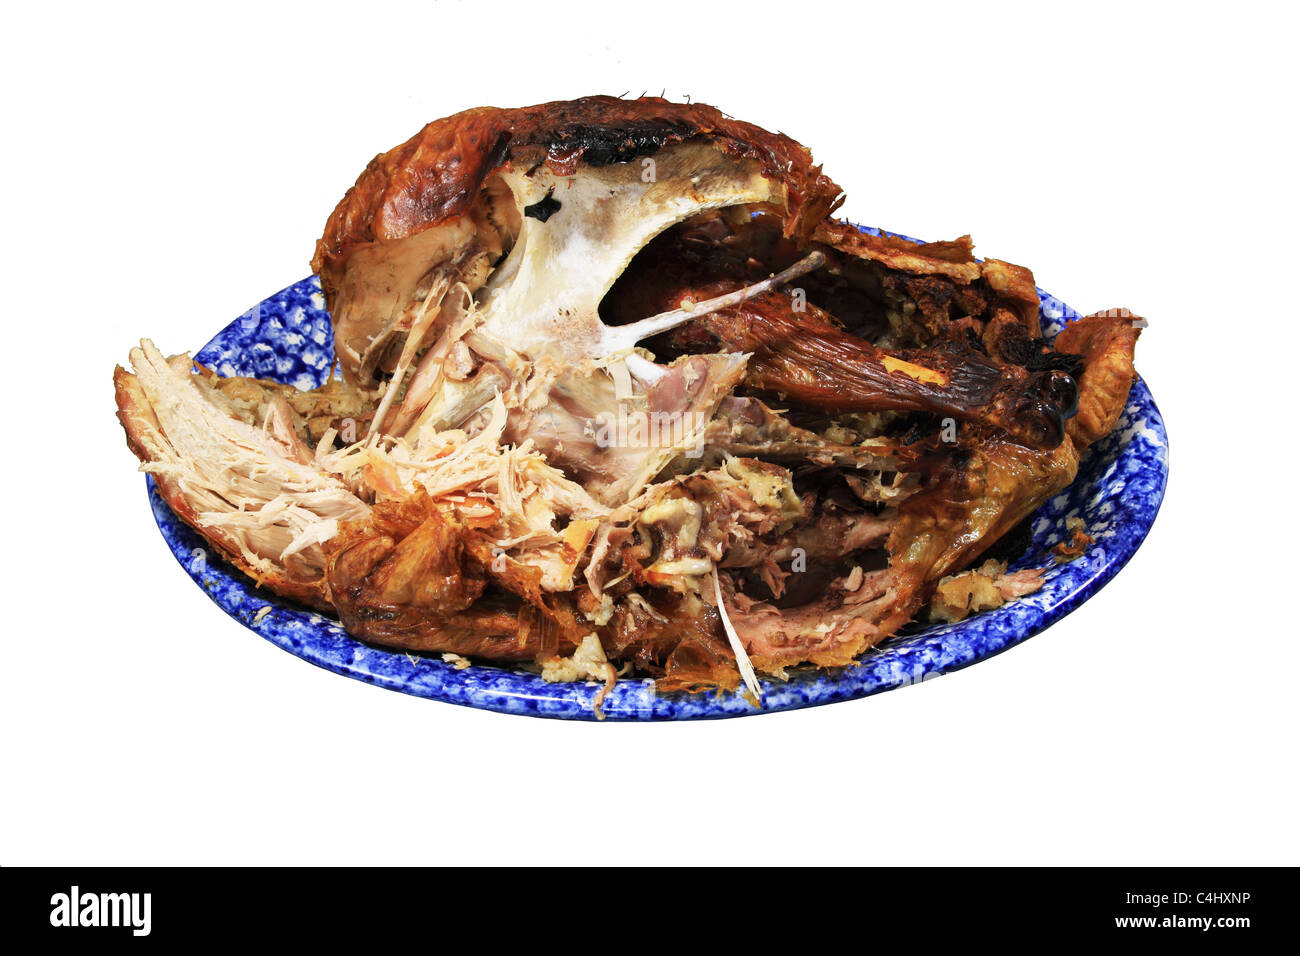 die Hälfte gegessen Türkei Karkasse auf einer blauen Platte isoliert auf weißem Hintergrund Stockfoto